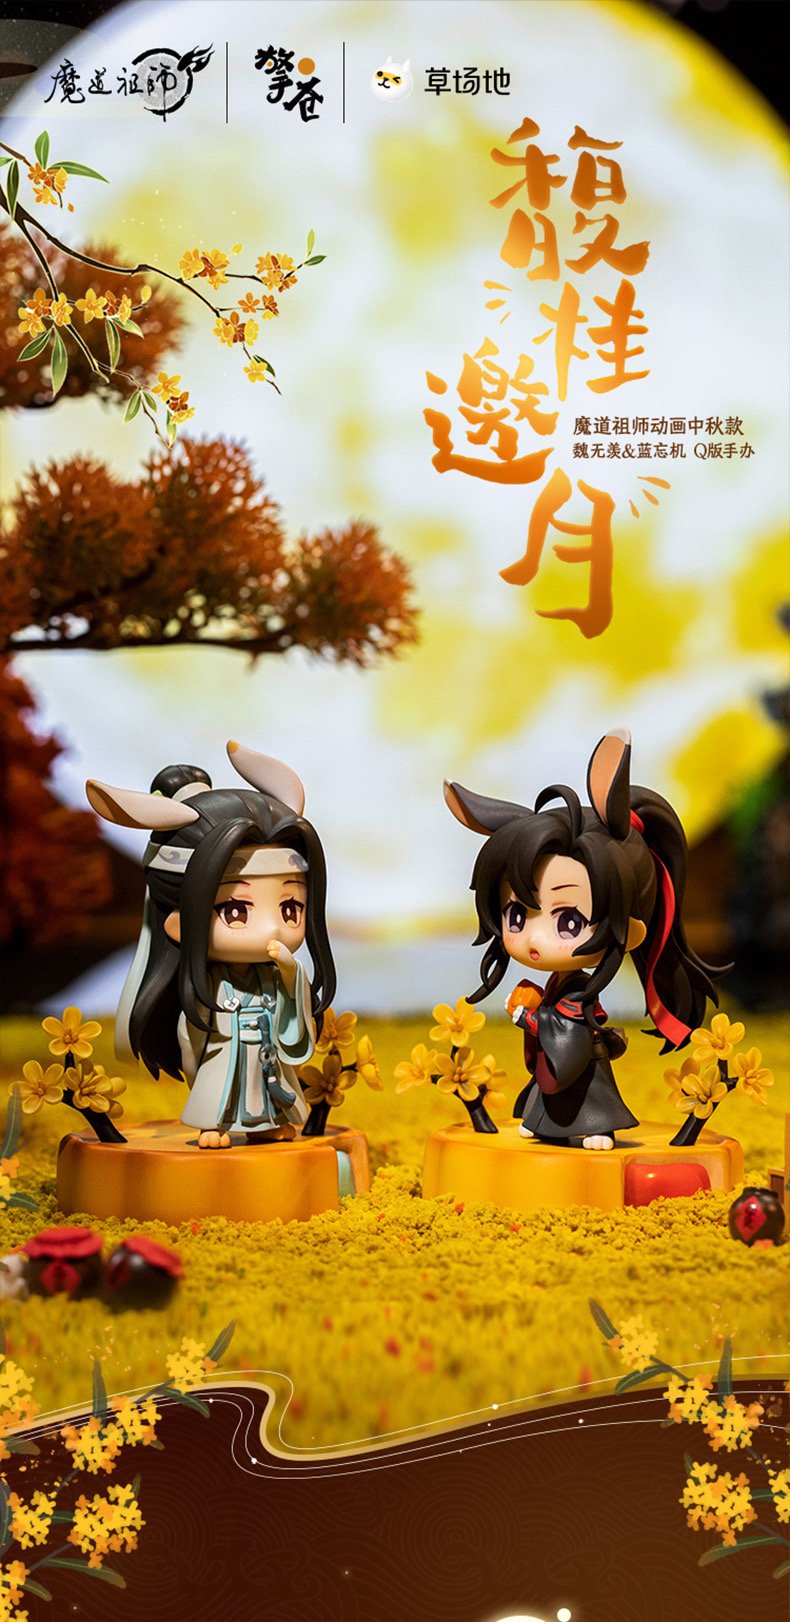  CALEMBOU Anime Figure, Cute Wei Wuxian LAN Wangji Chibi Figure  Anime Grandmaster of Demonic Cultivation Figure Set, PVC Chibi Figure for Mo  Dao Zu Shi Fans (YILINGLAOZU-XRMG-1PCS) : Toys & Games